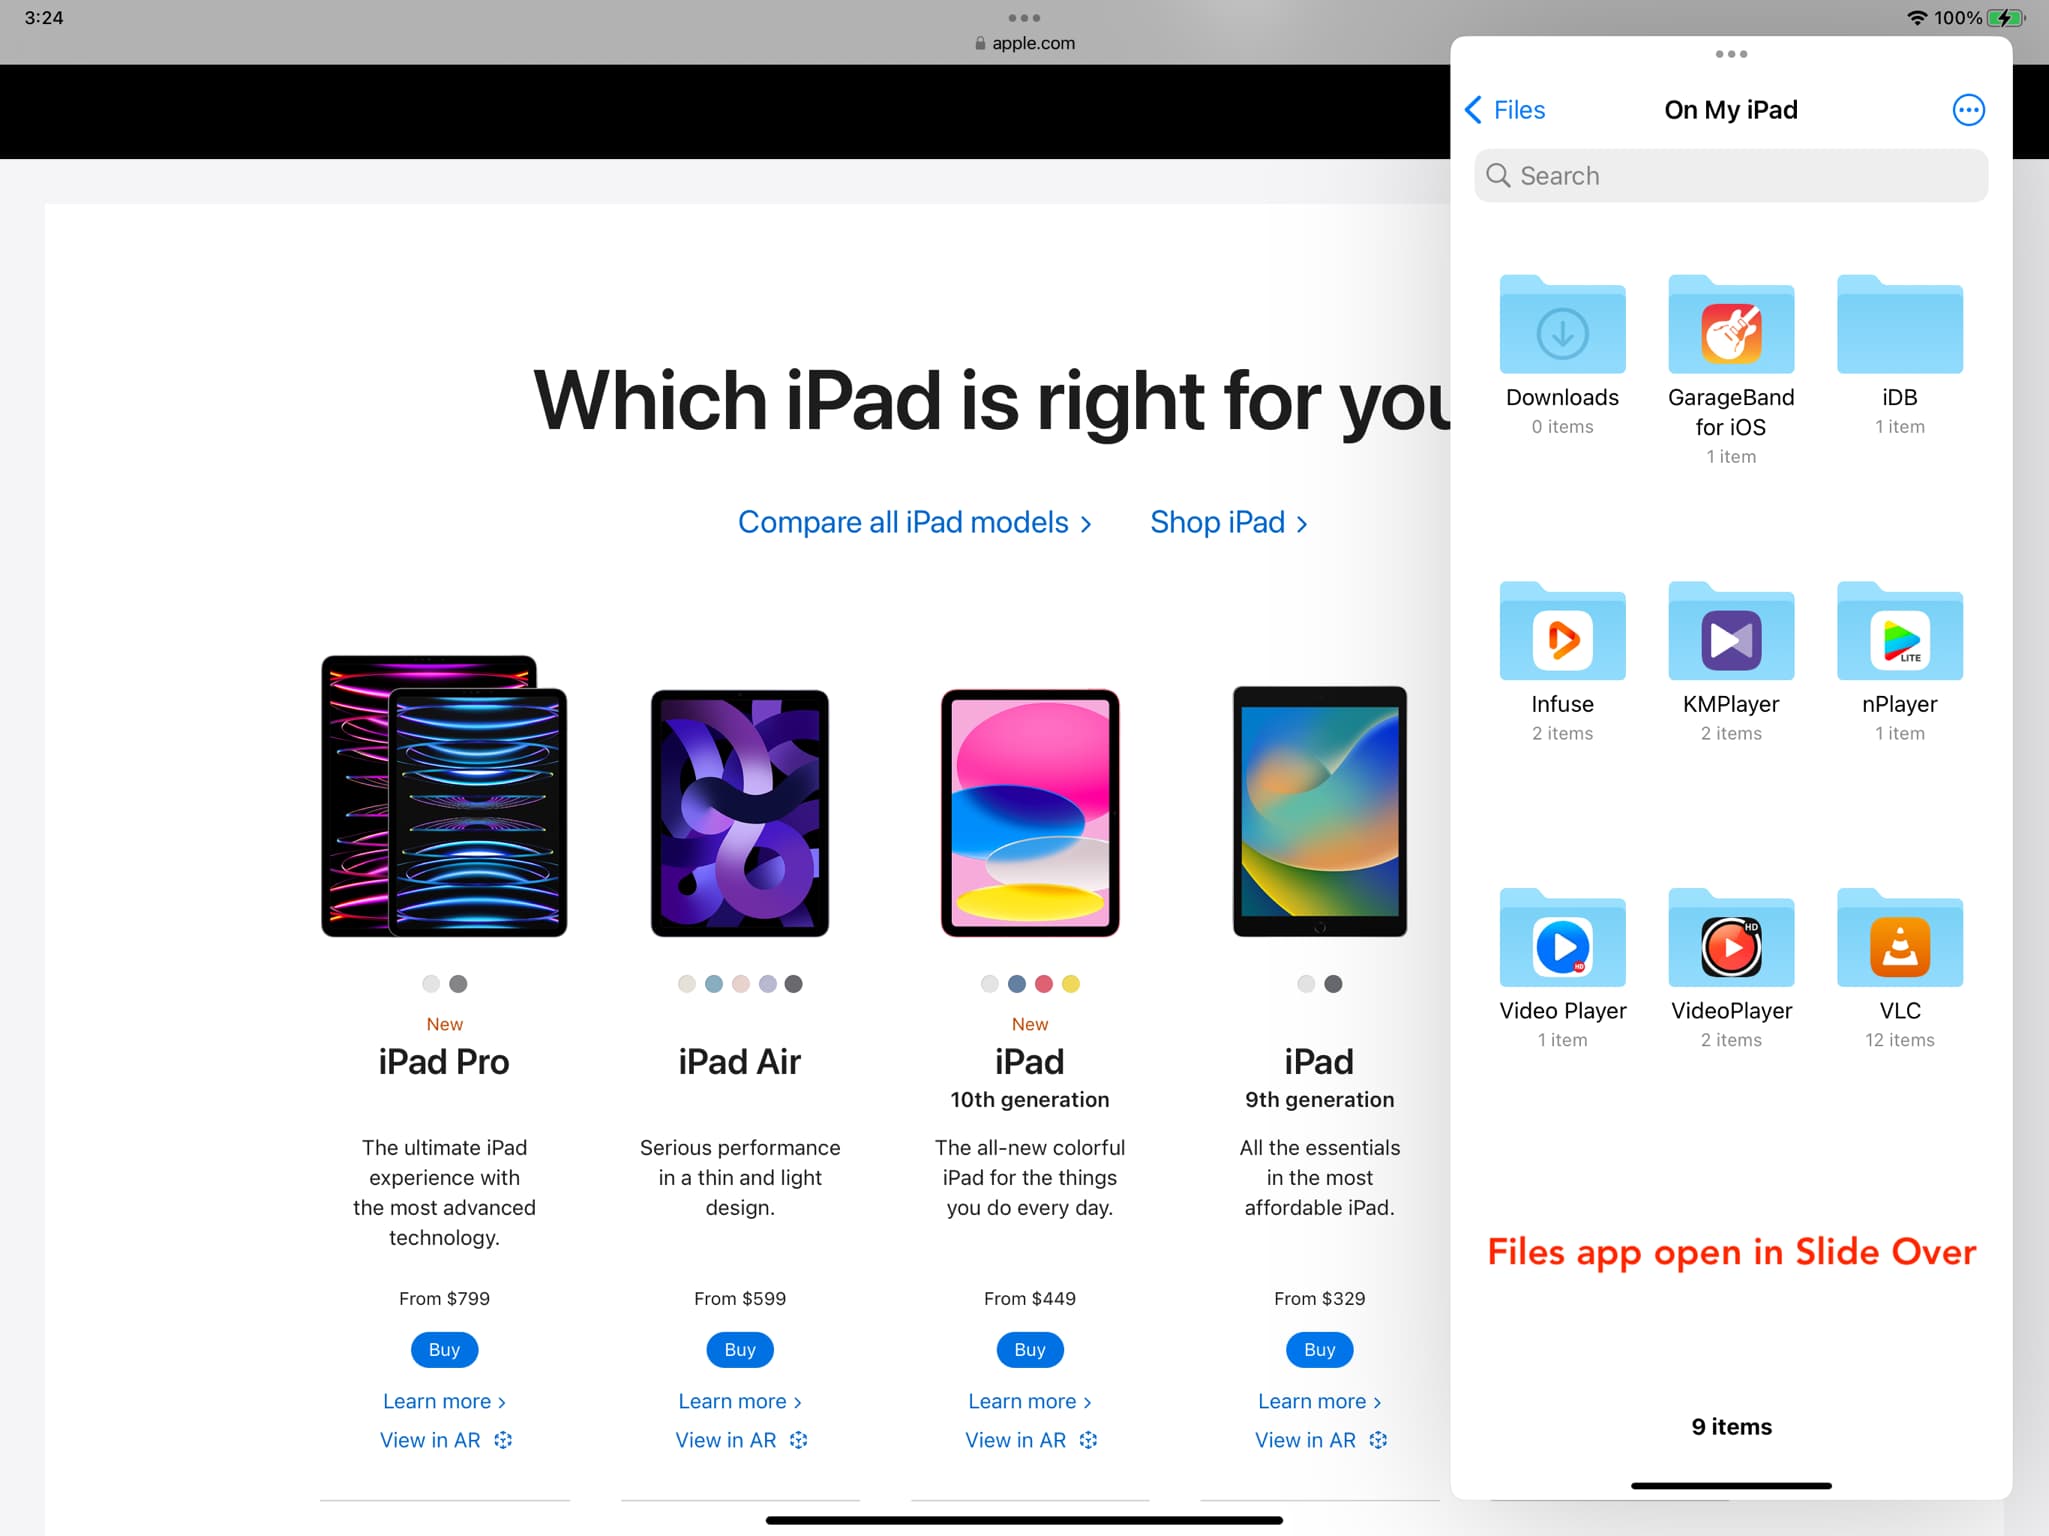 Files app open in Slide Over on iPad